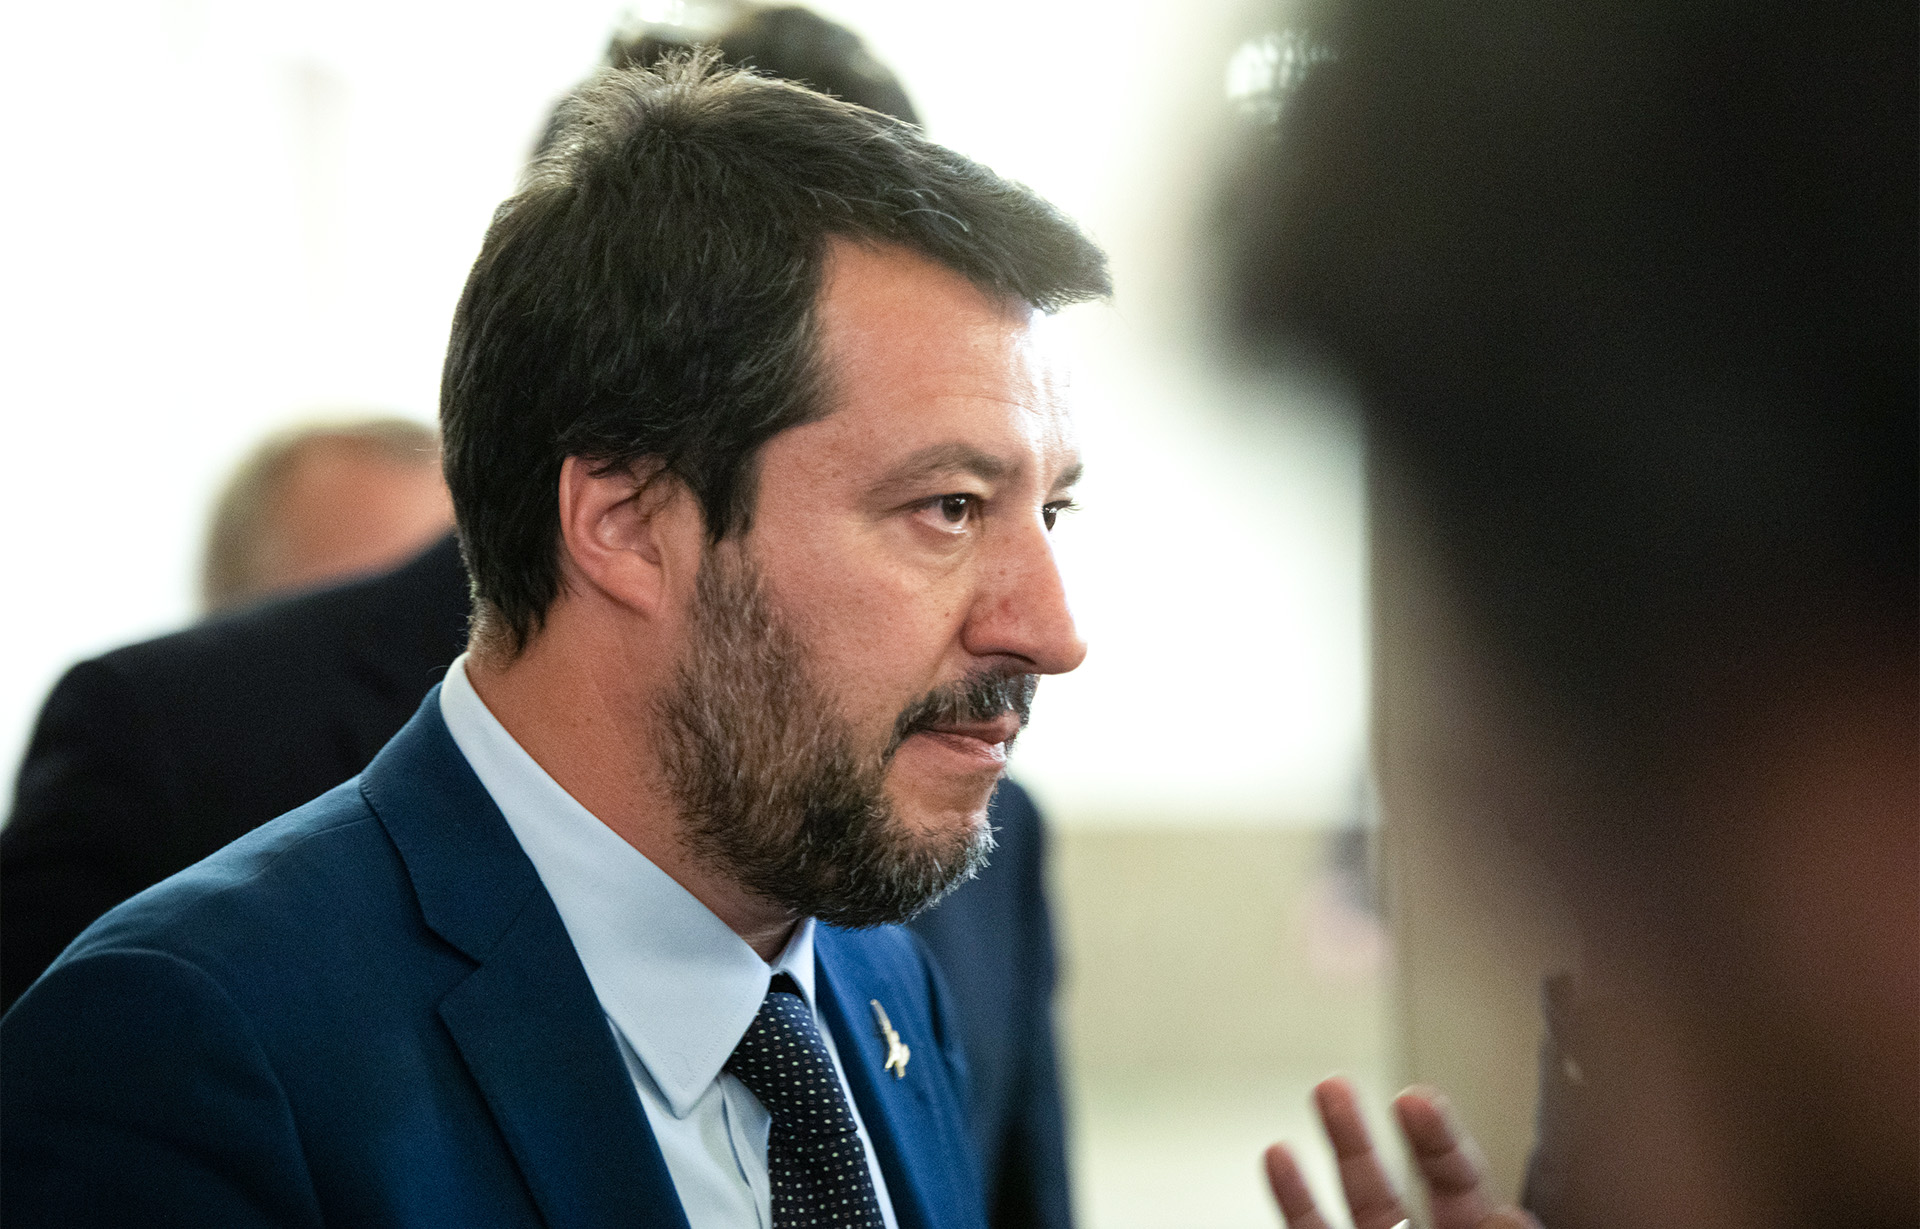 Alakul a szövetség: közös chartát fogad el Orbán és Salvini